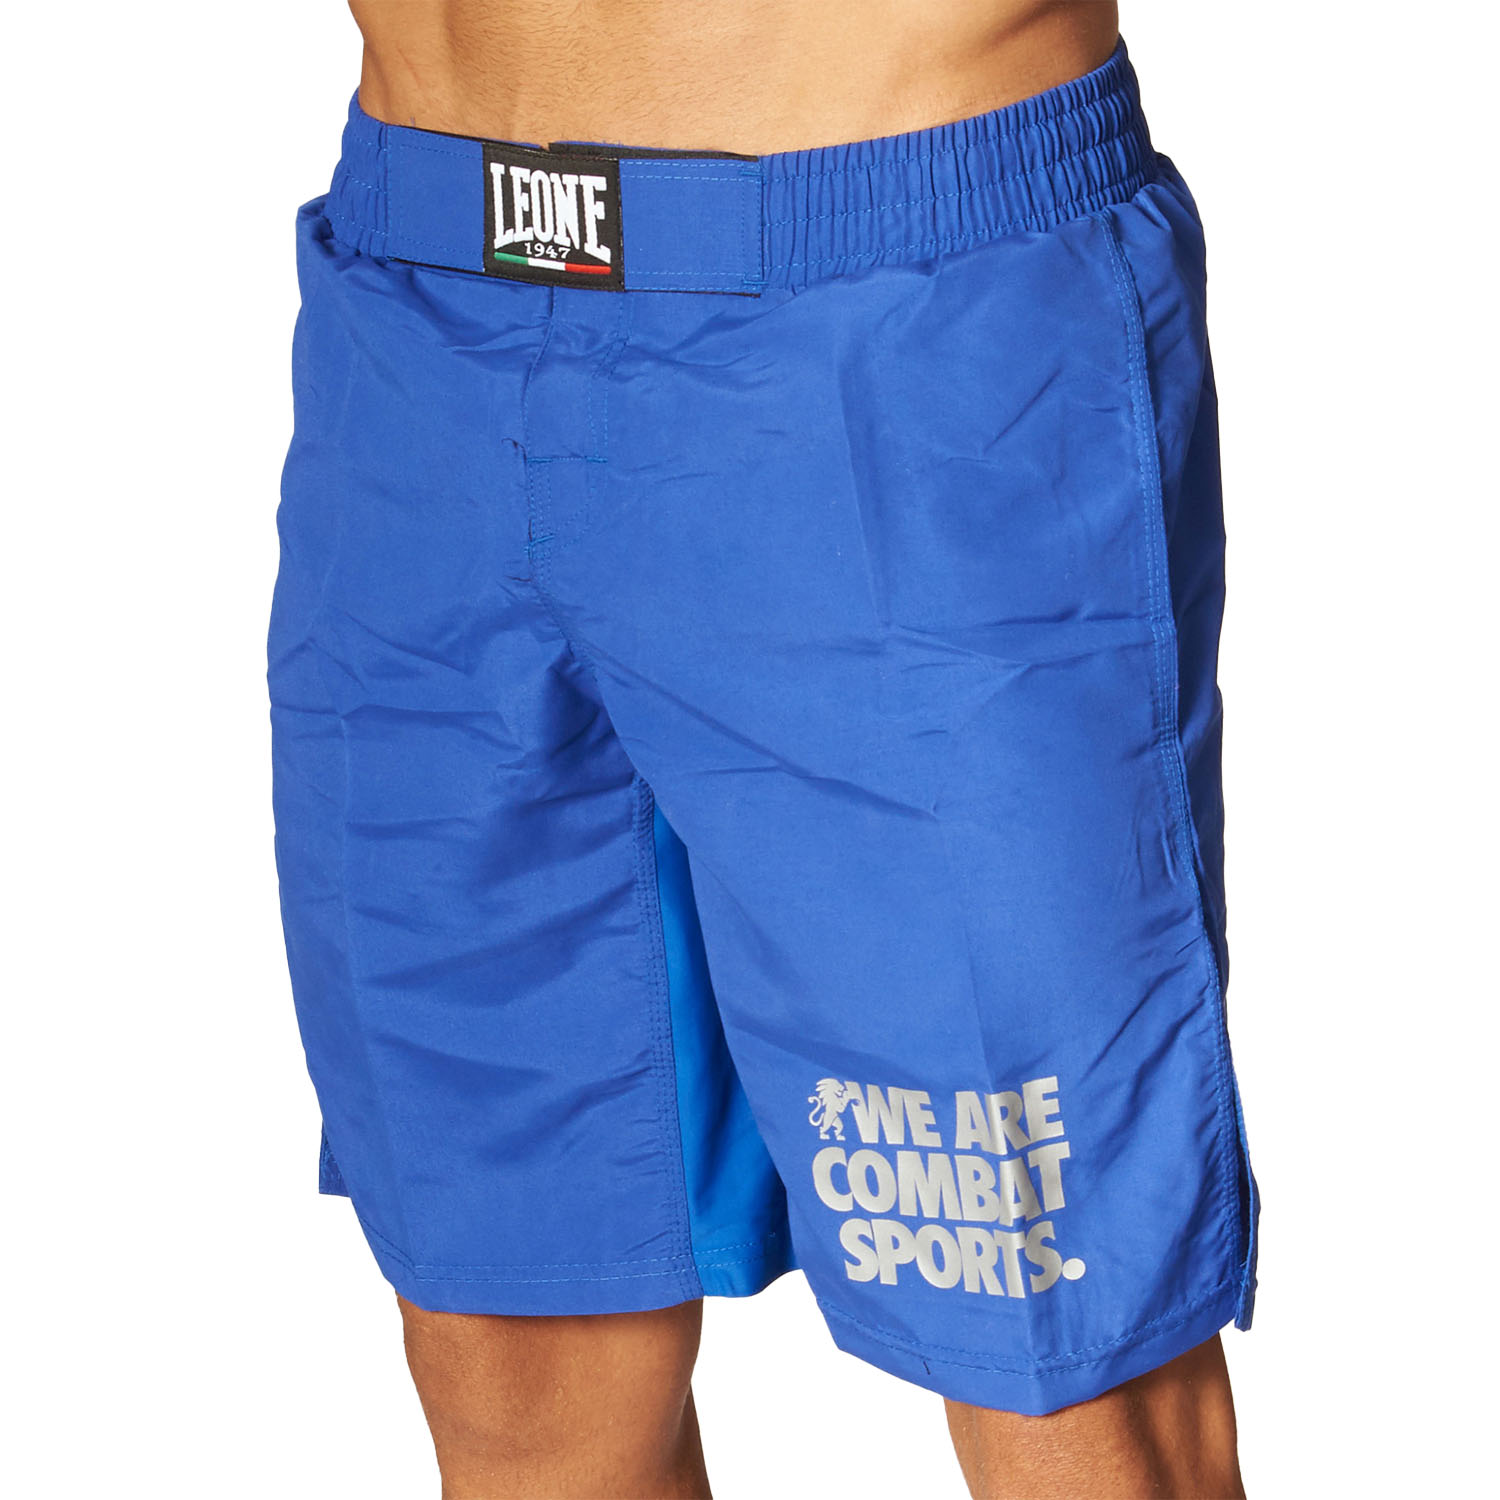 LEONE MMA Fight Shorts, Basic, AB795, blau, XL